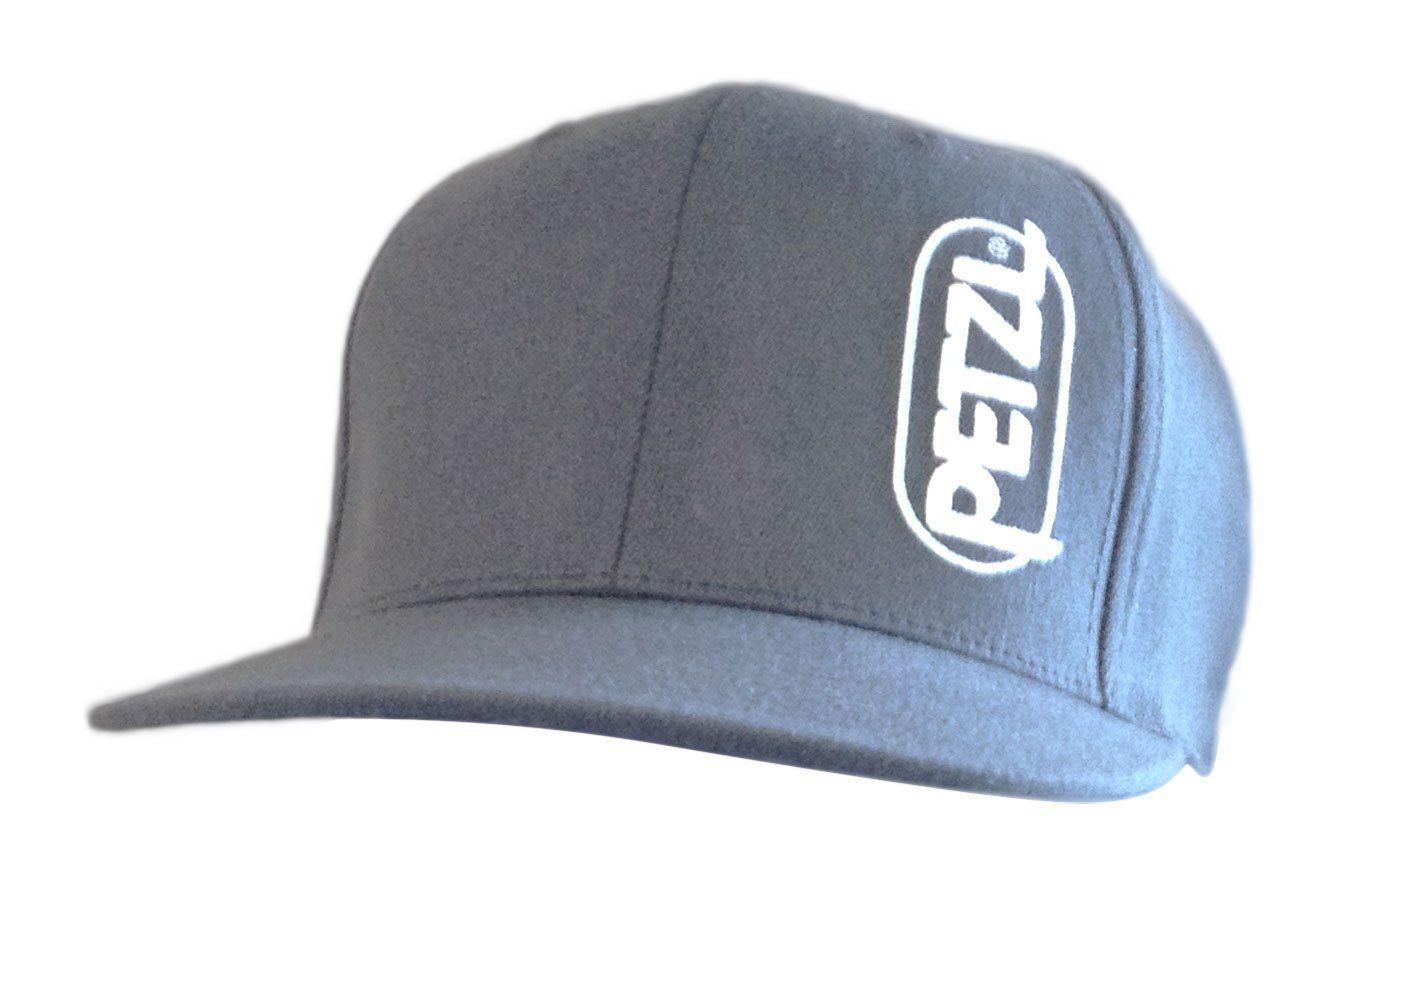 Petzl Logo - Petzl Vertical Logo Ball Cap. Climbing. Climbing, Cap